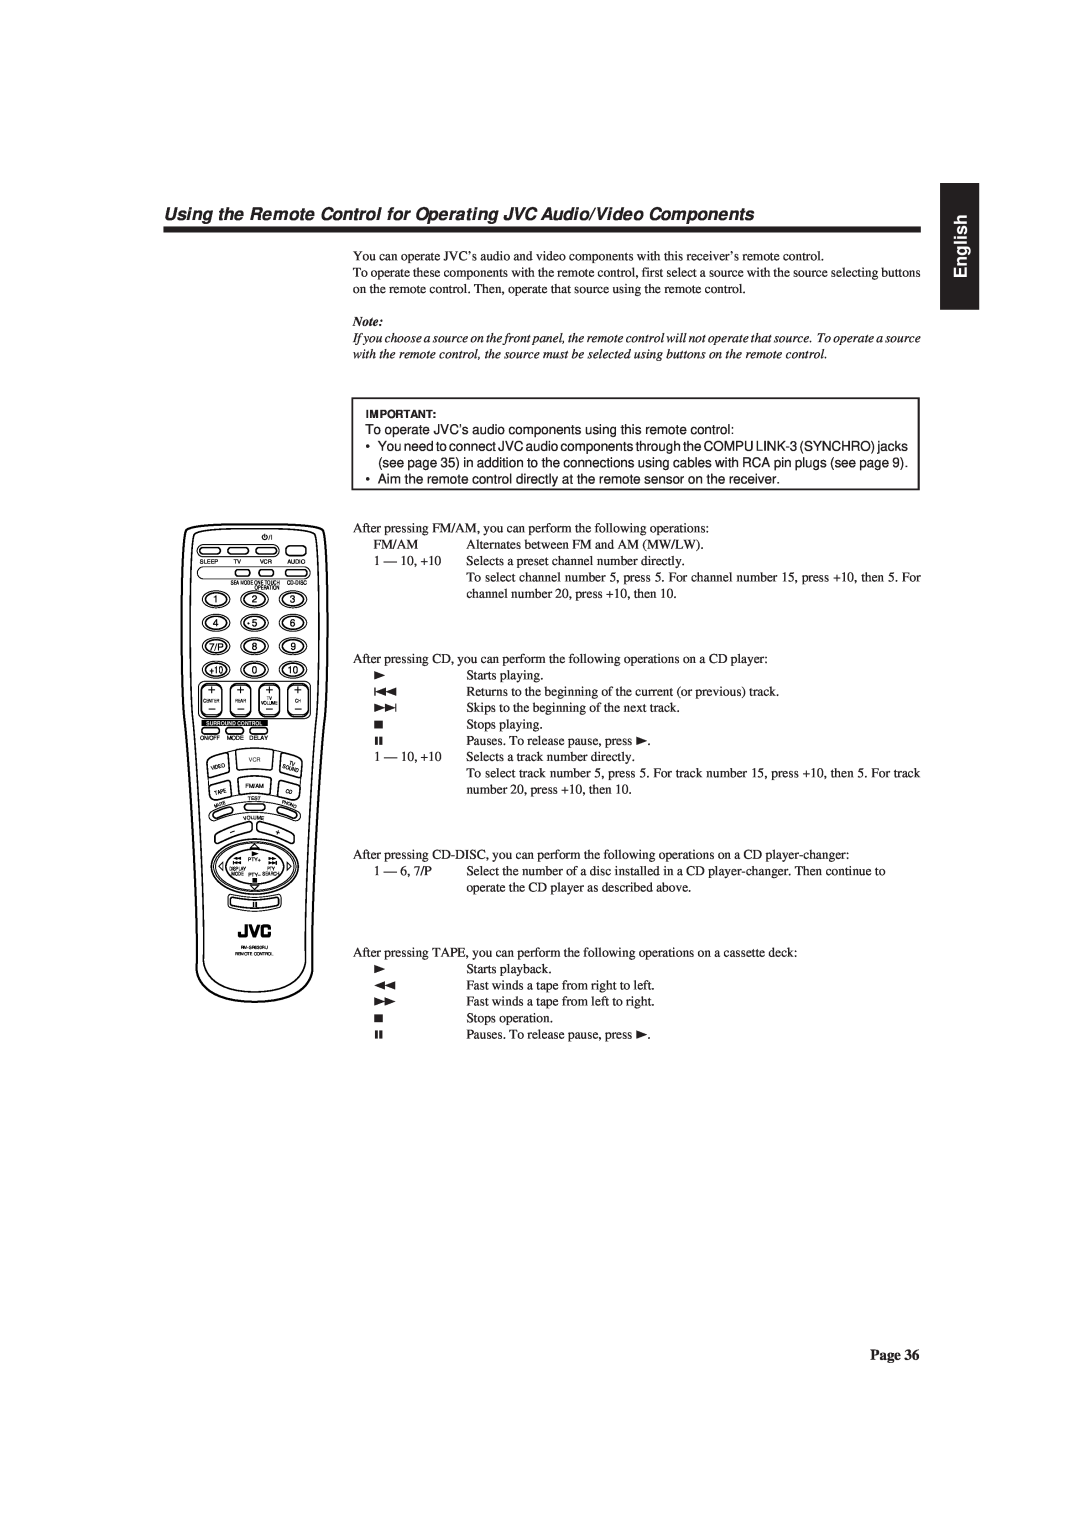 JVC RX-630RBK manual English, FM/AM Alternates between FM and AM MW/LW 